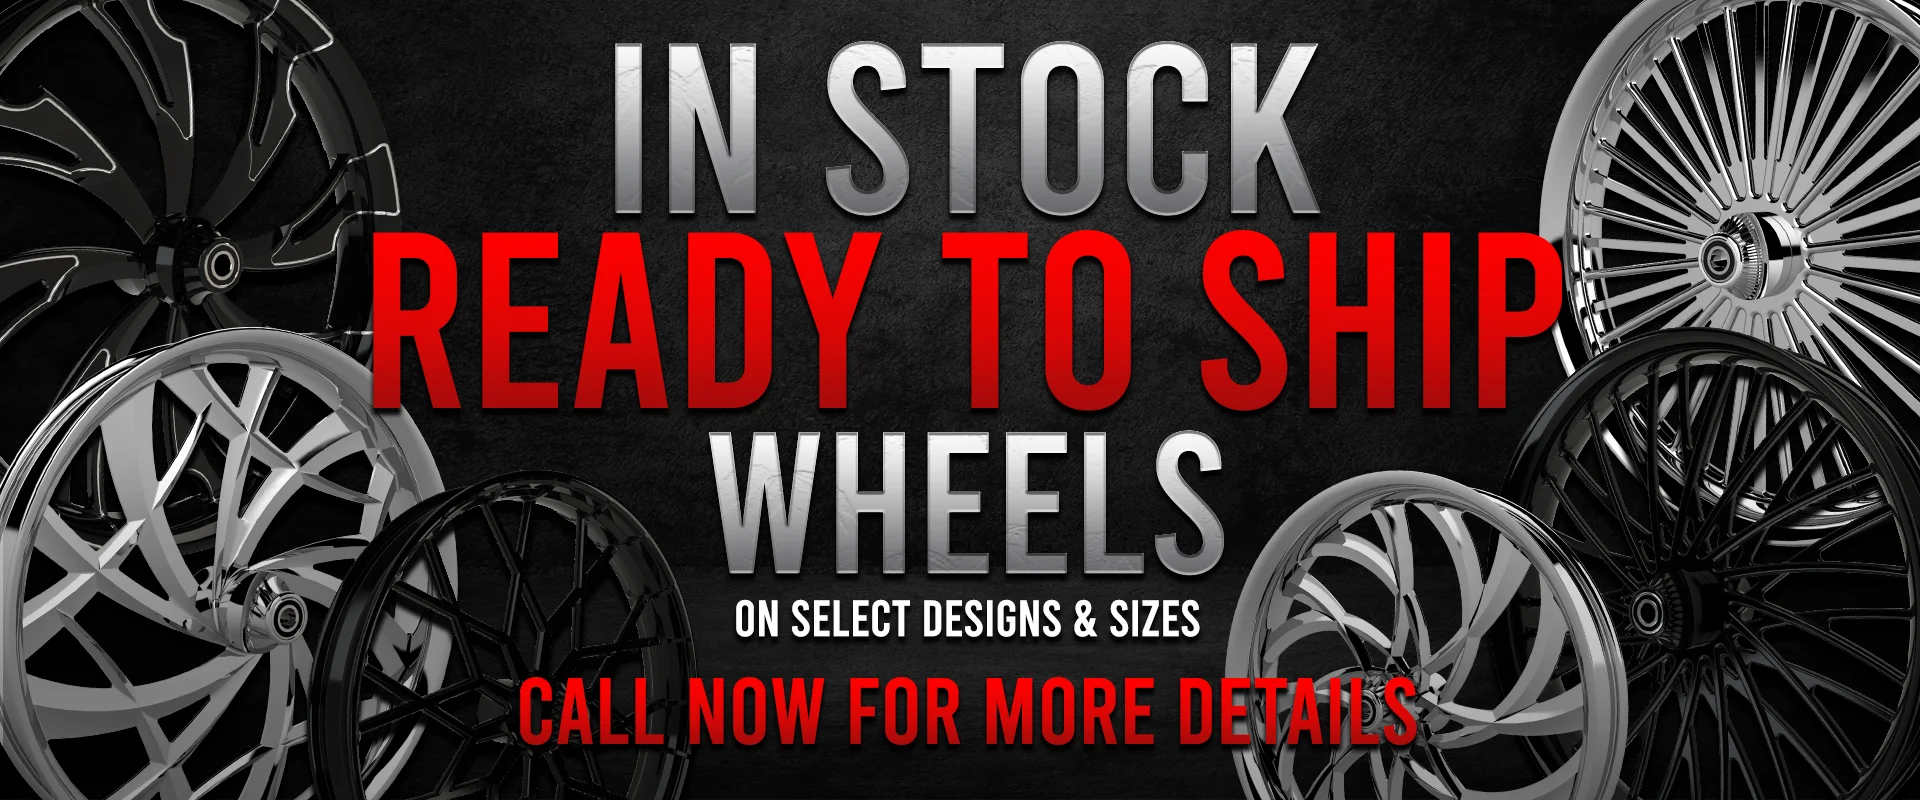 In-Stock custom motorcycle wheels